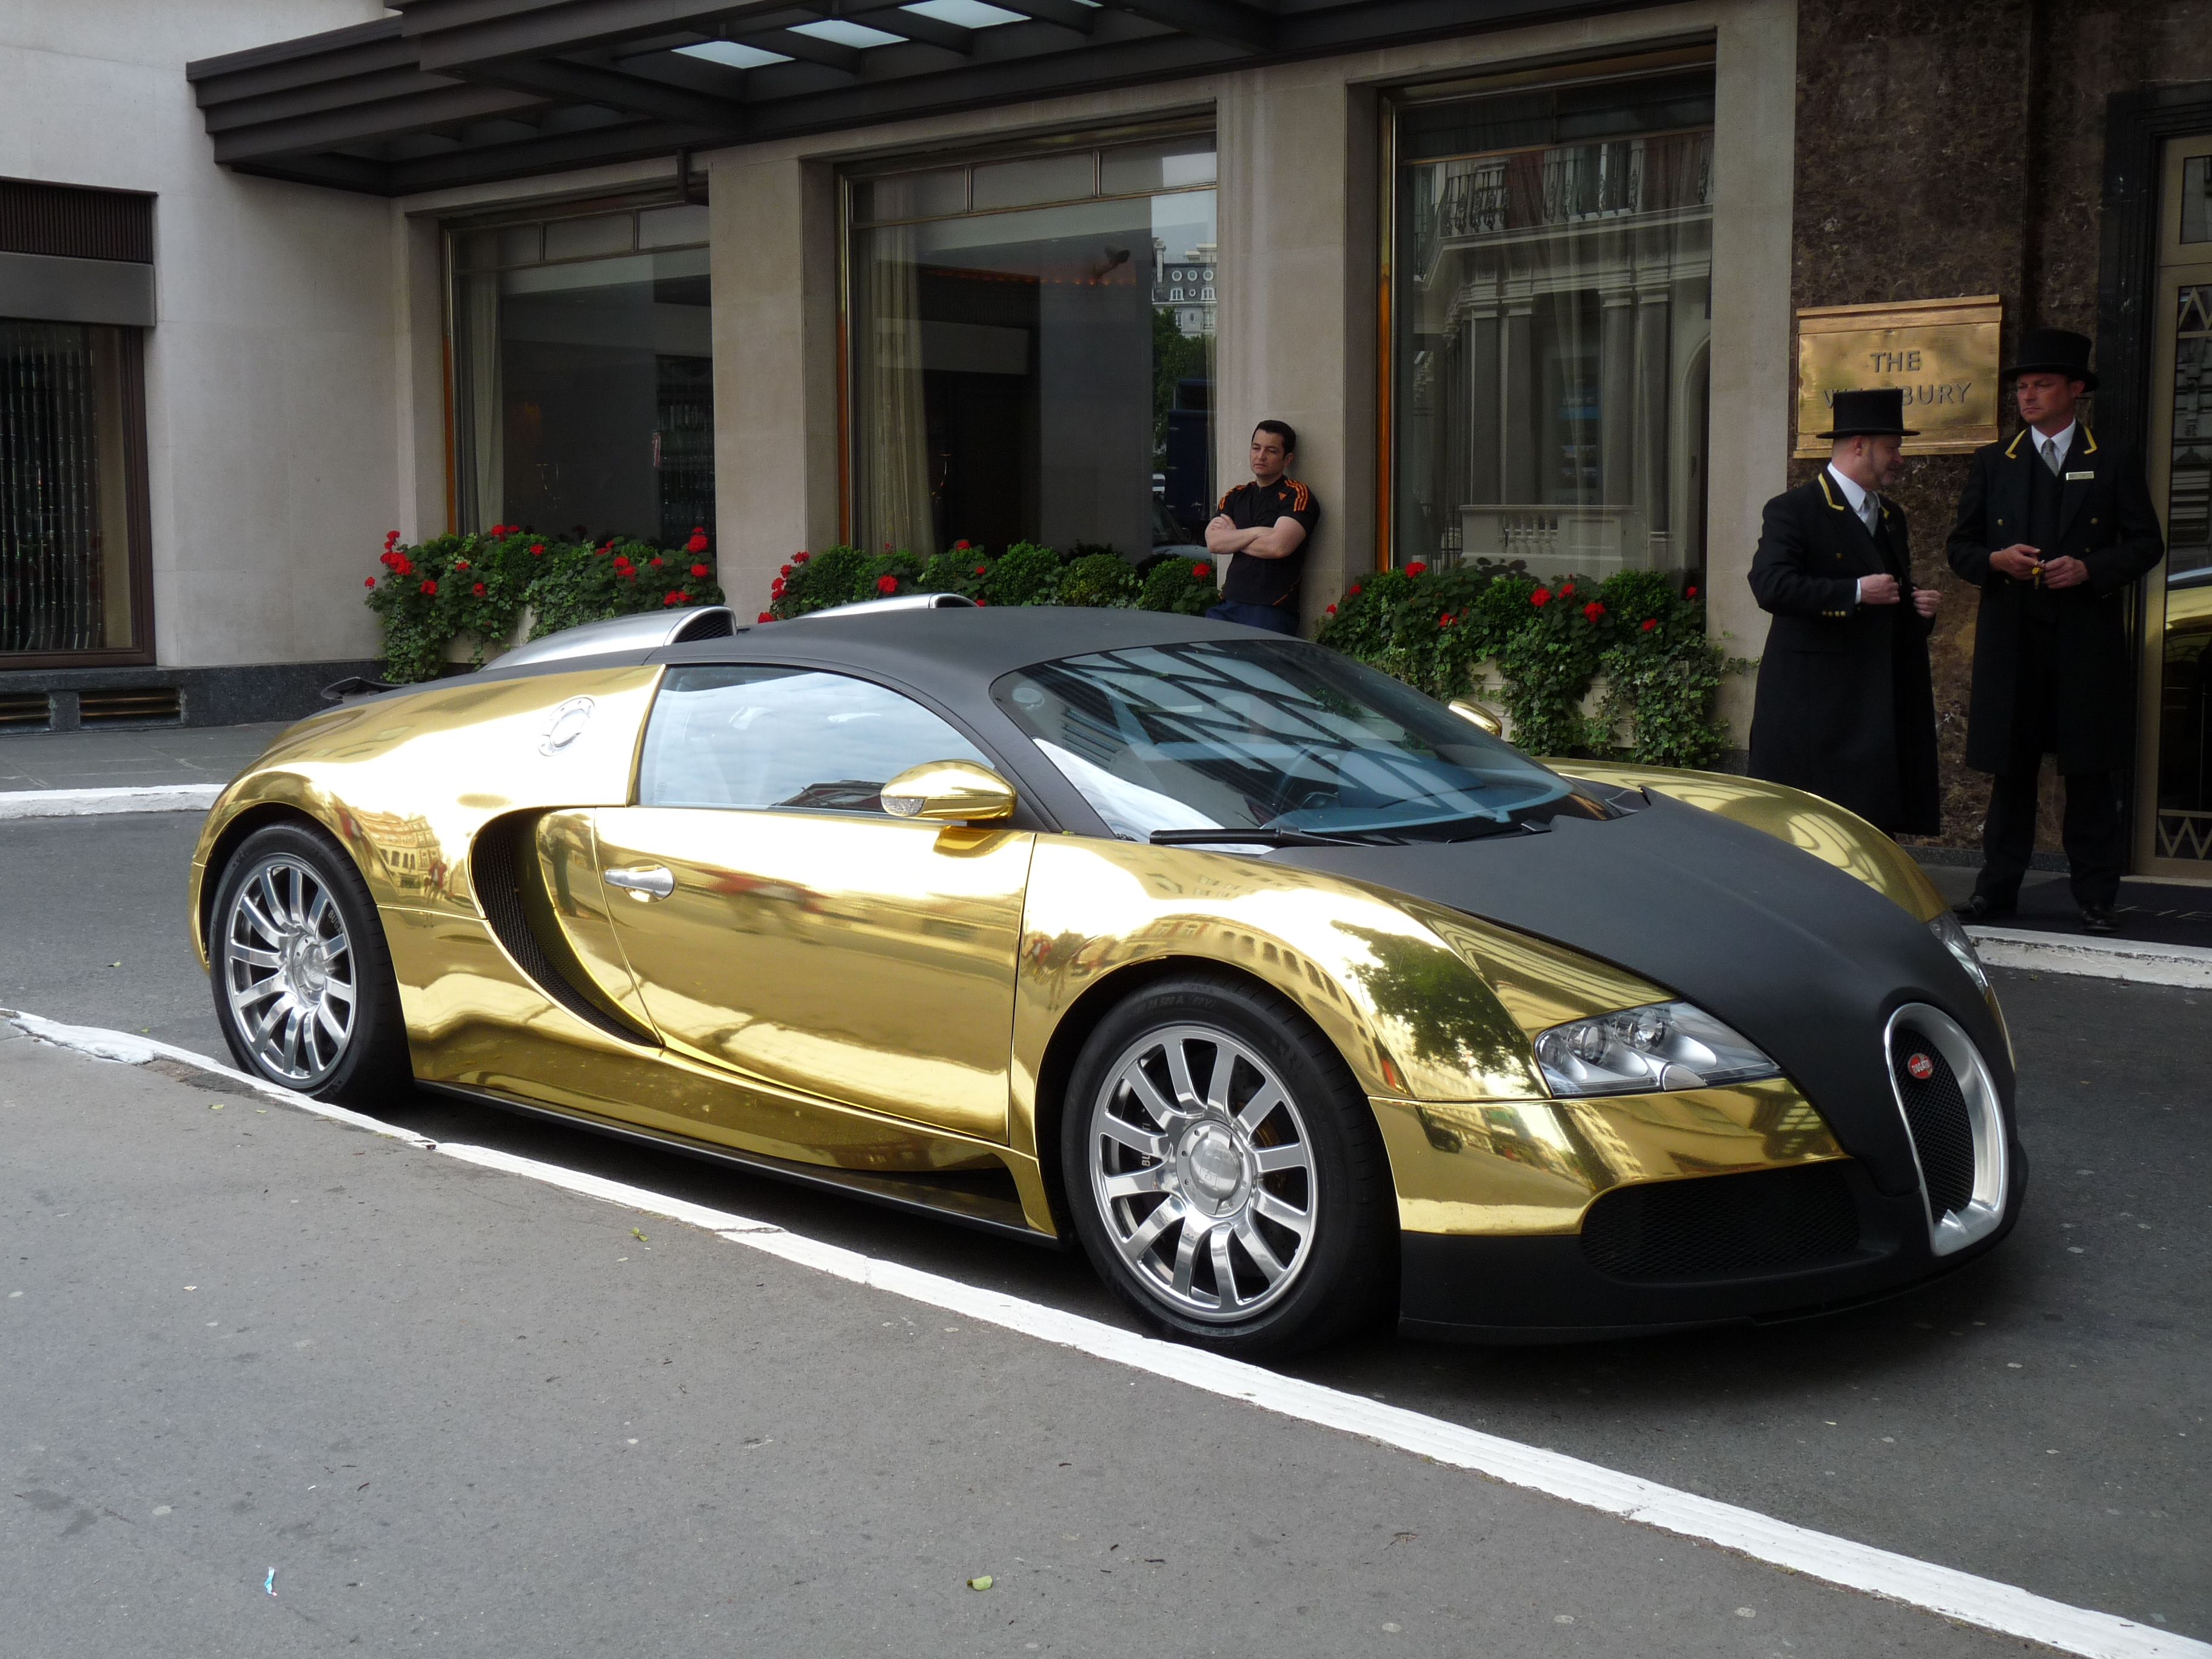 Gold Bugatti Veyron. Gold plated Bugatti Veyron i saw in London. Cars bugatti veyron, Gold car, Bugatti